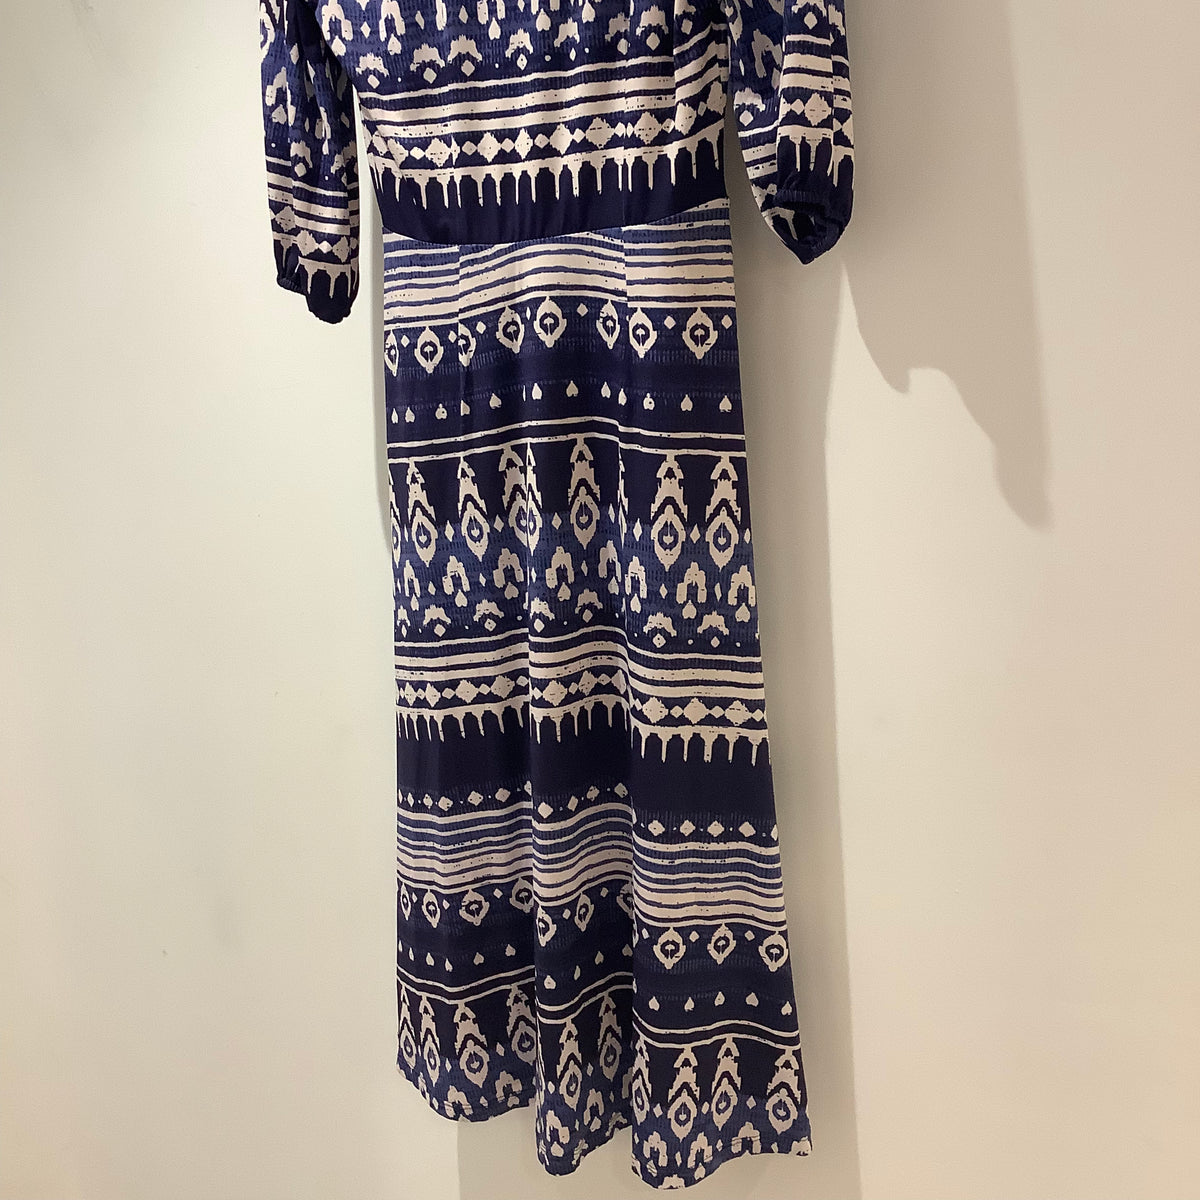 K Design print dress Blue/white Size XS